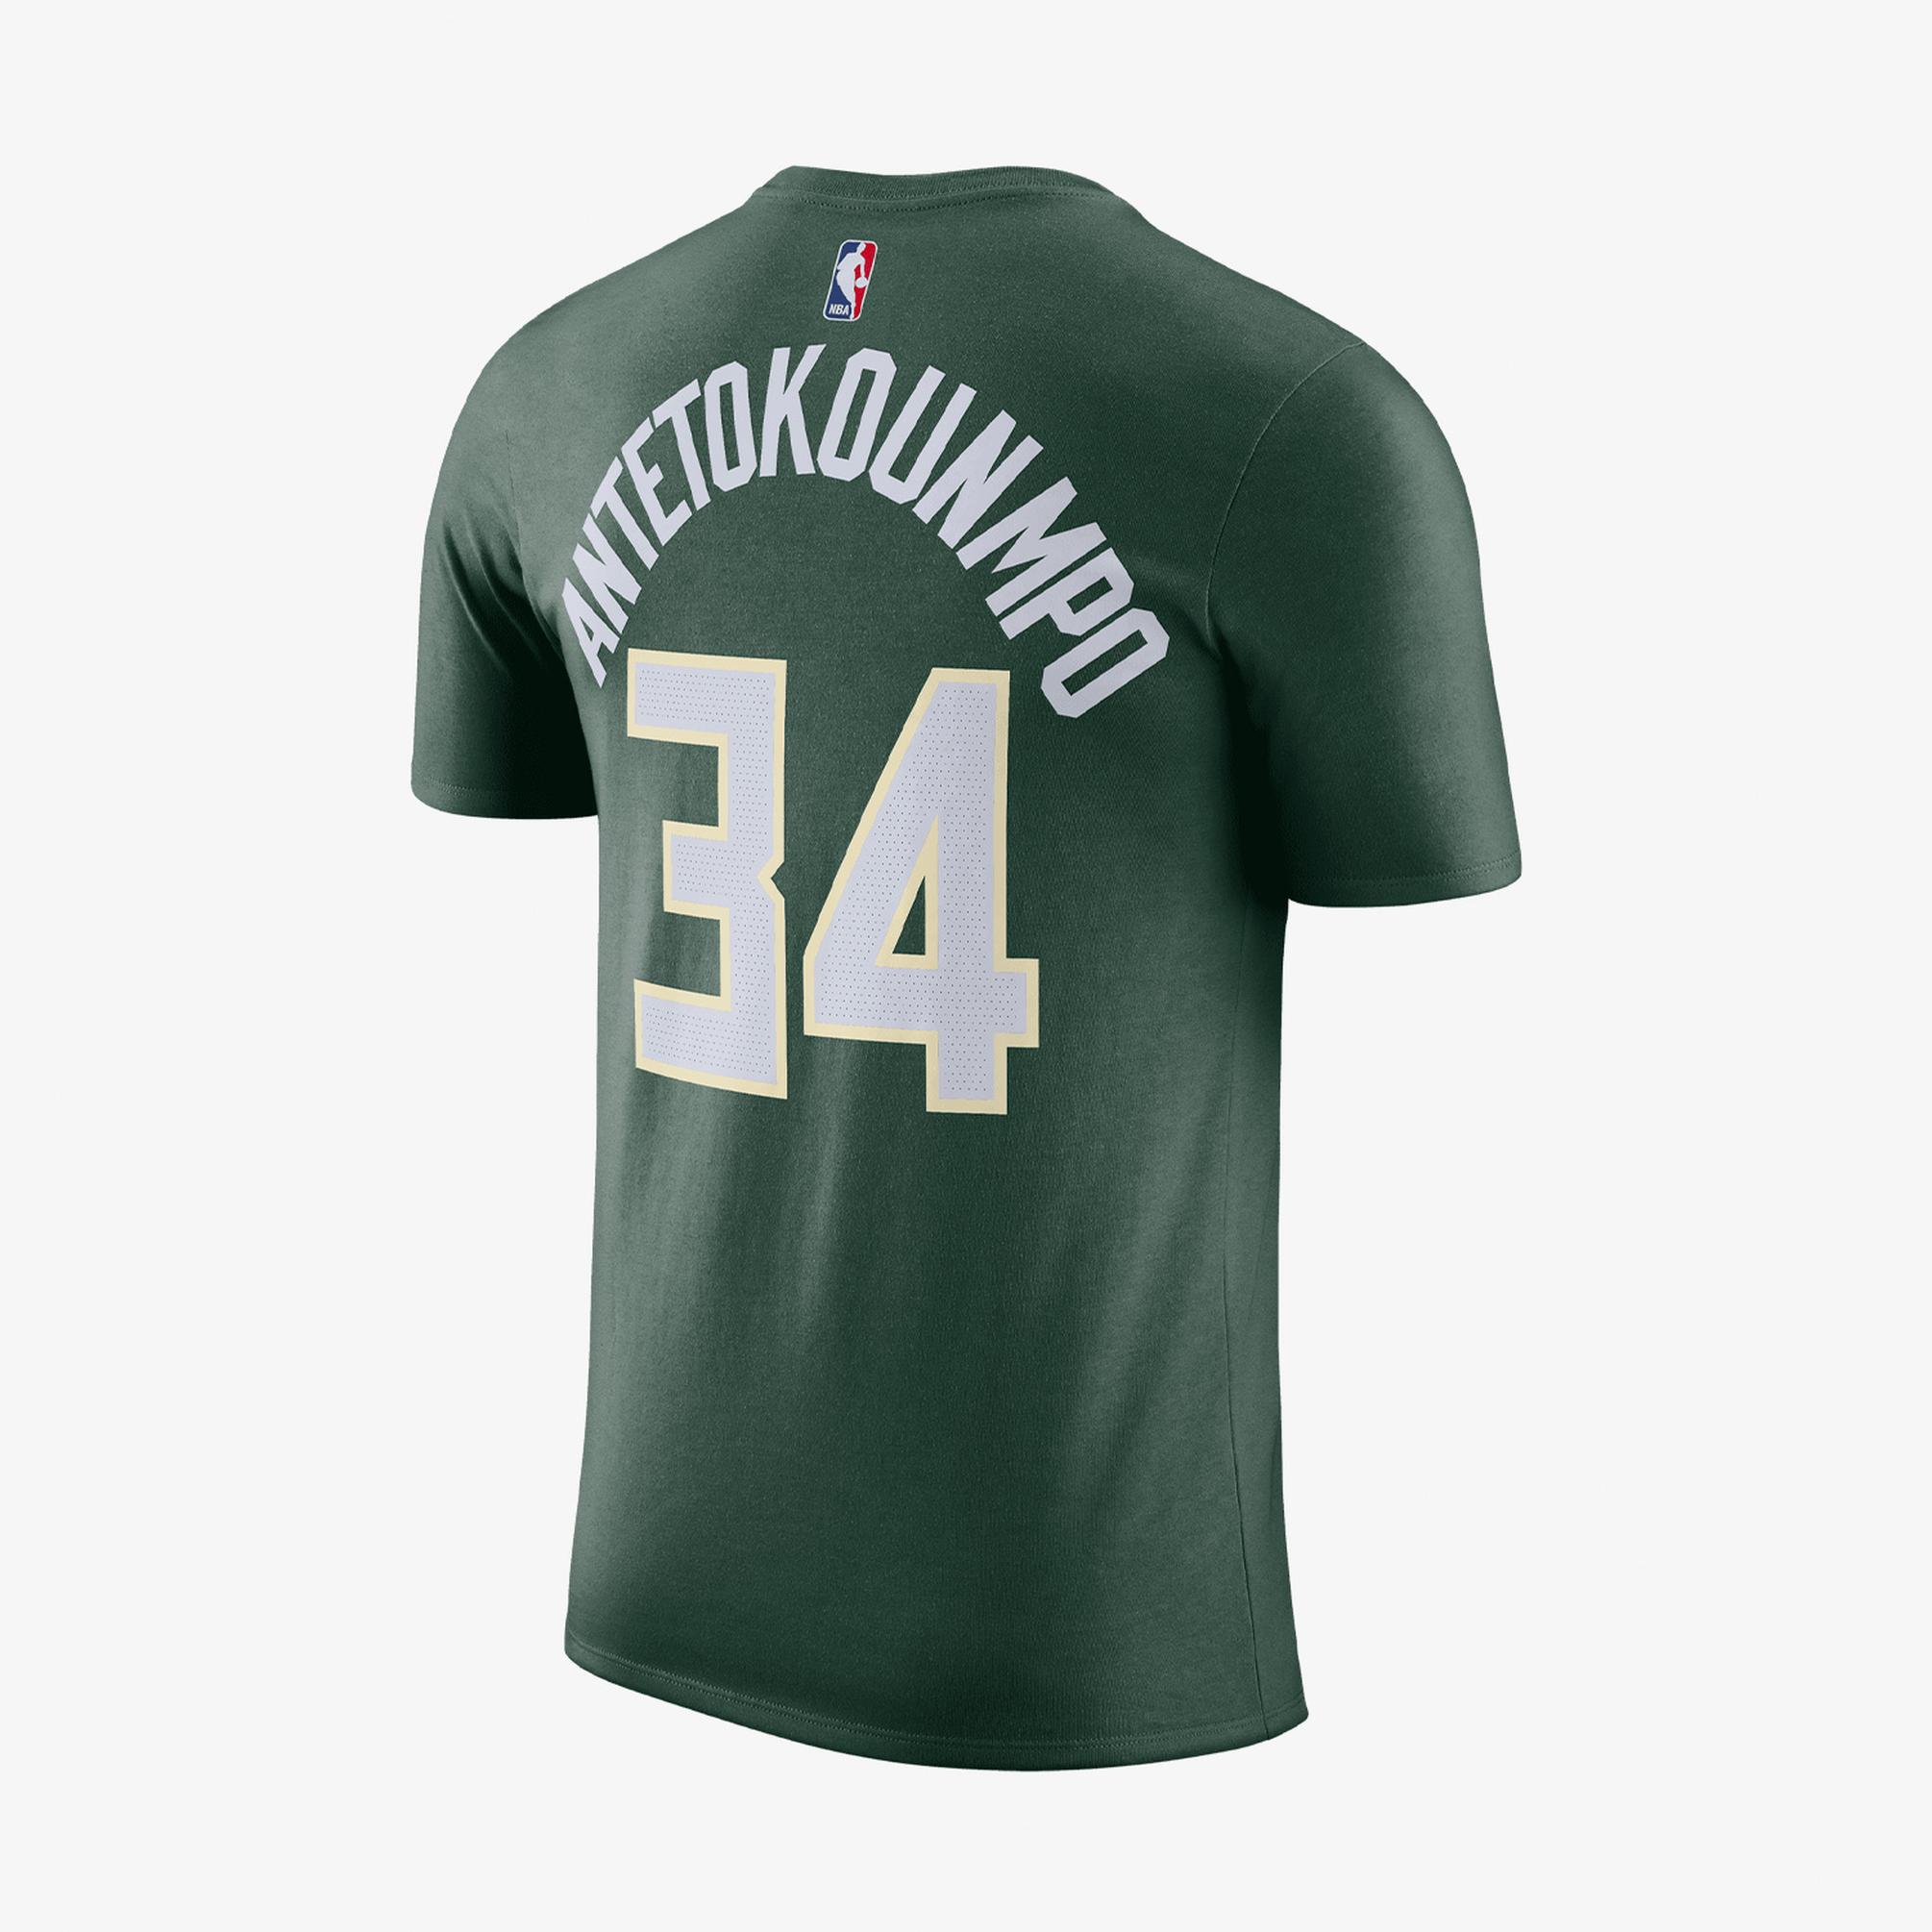  Nike NBA Milwaukee Bucks Erkek Yeşil T-Shirt